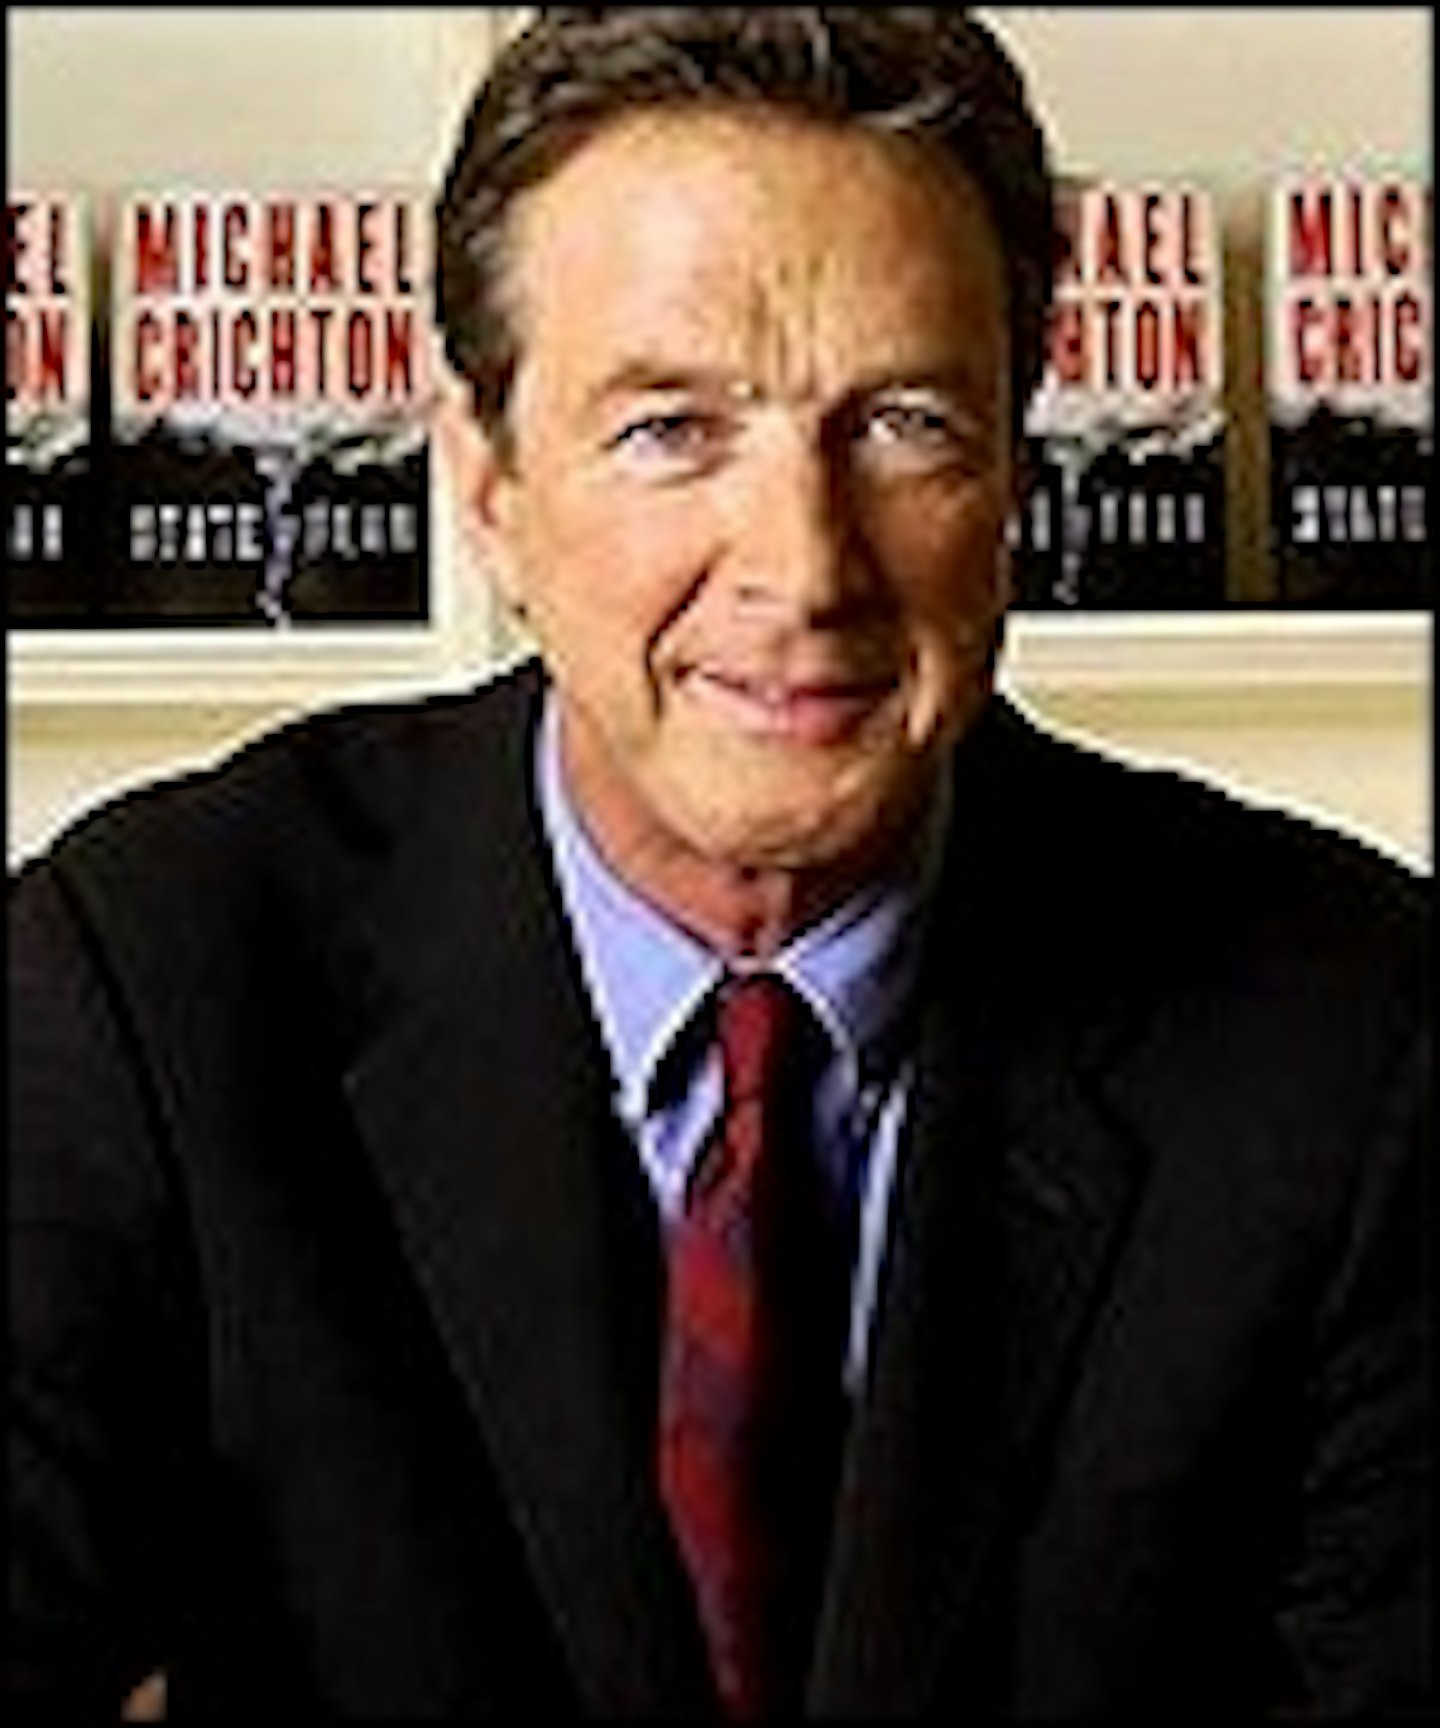 Michael Crichton Dies Aged 66